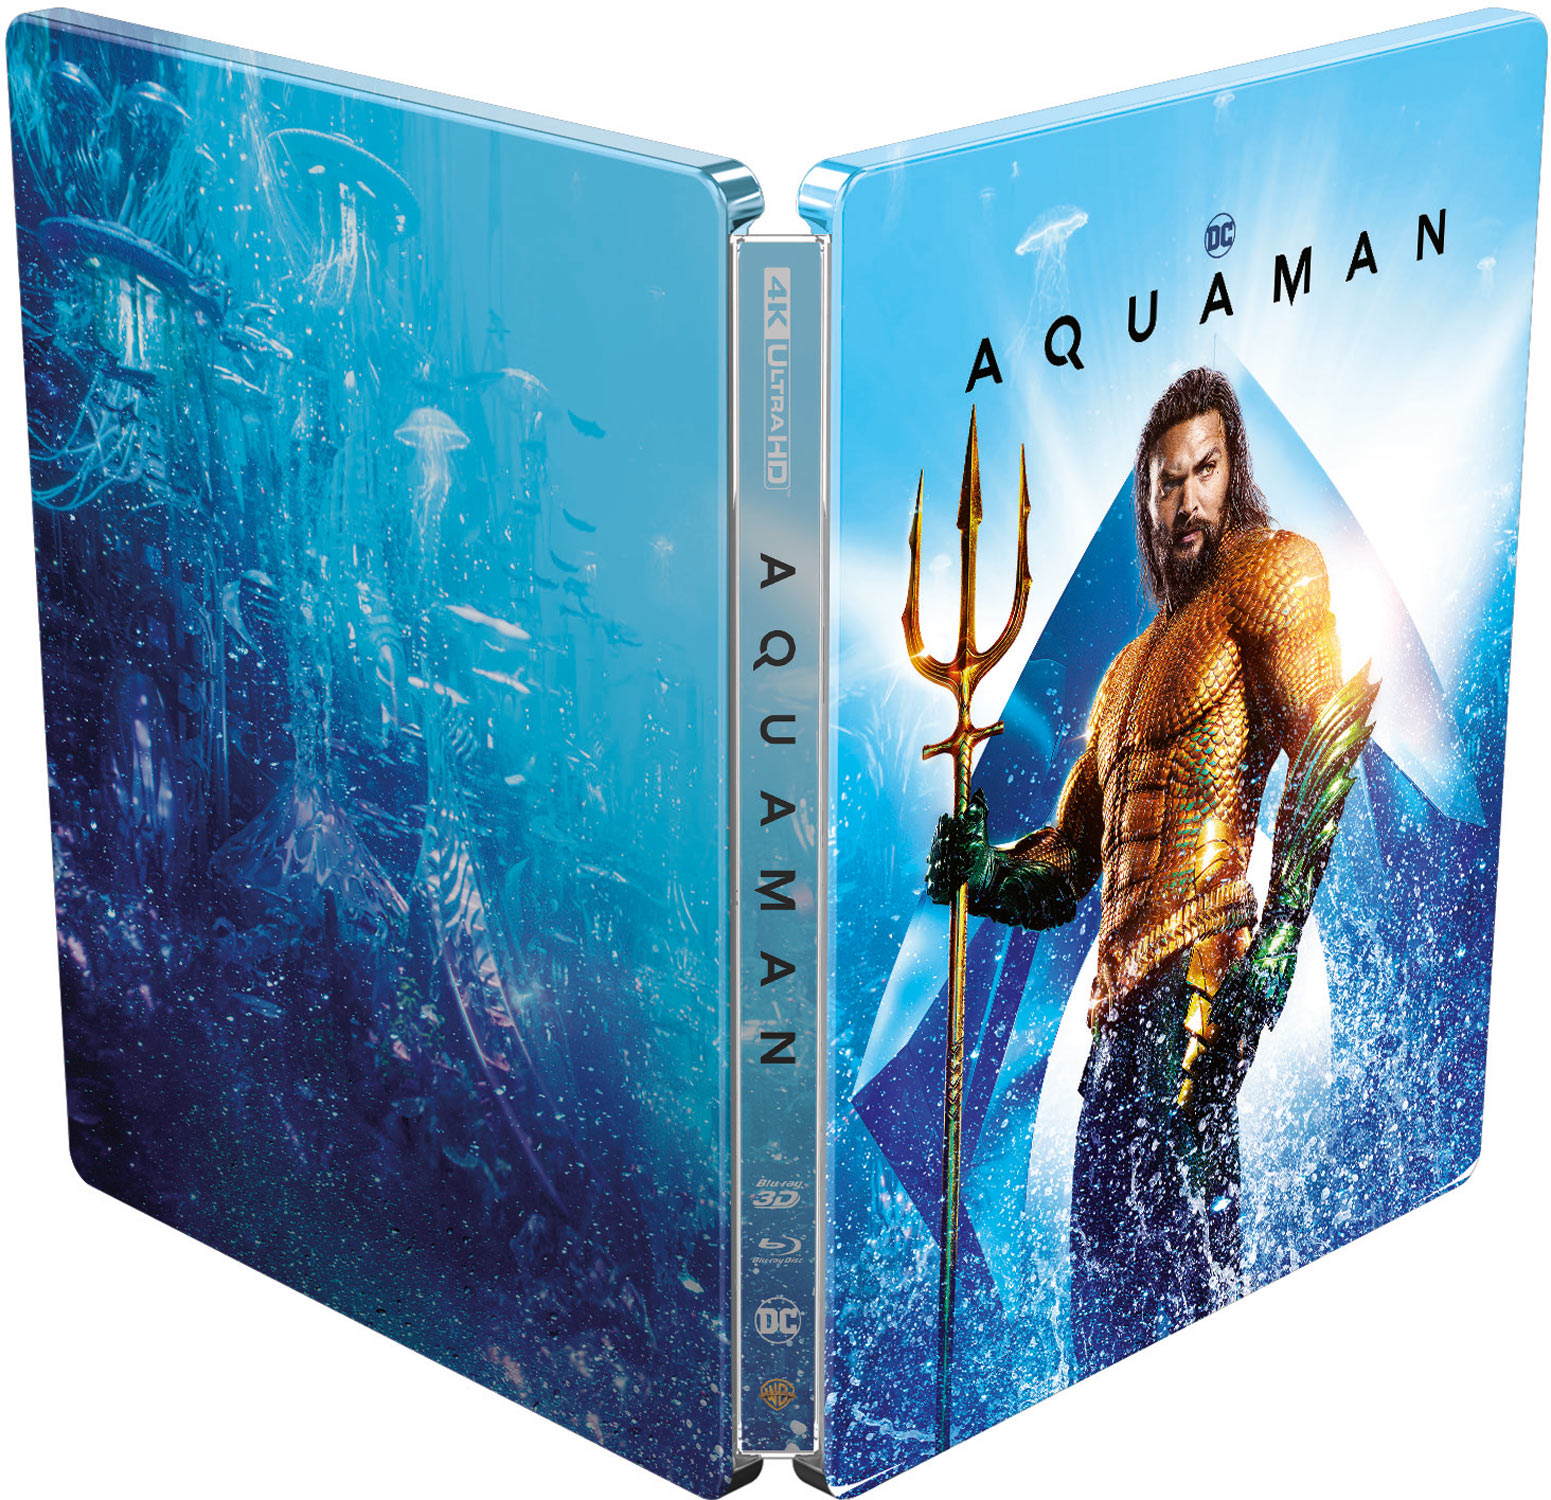 Aquaman - SteelBook 4K Ultra HD + Blu-ray 3D + Blu-ray 2D